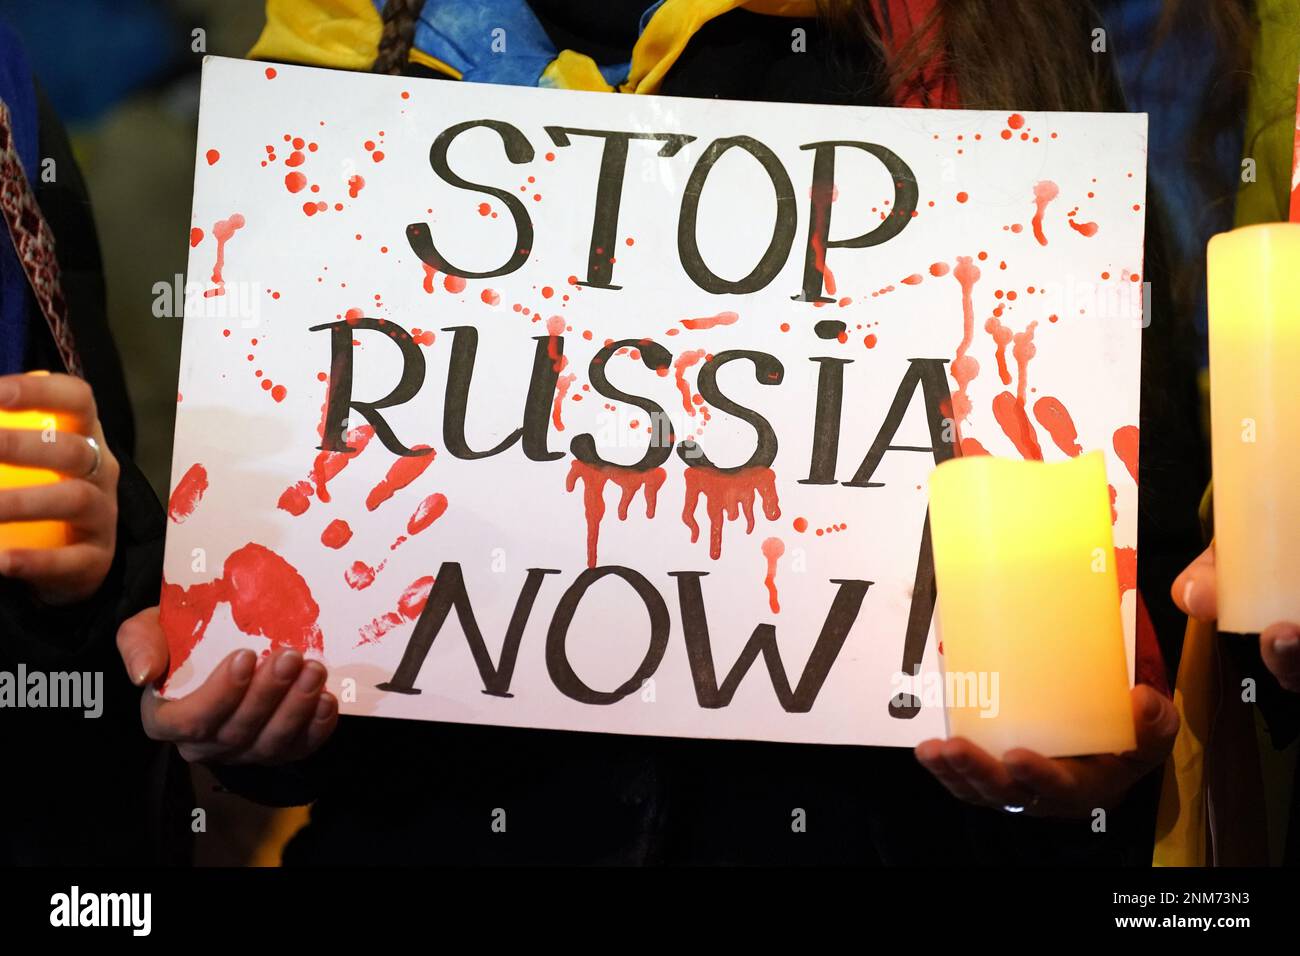 Una persona che tiene un cartello fuori dall'ambasciata russa a Bayswater, nel centro di Londra, in una manifestazione per celebrare il primo anniversario dell'invasione russa dell'Ucraina. Data immagine: Venerdì 24 febbraio 2023. Foto Stock